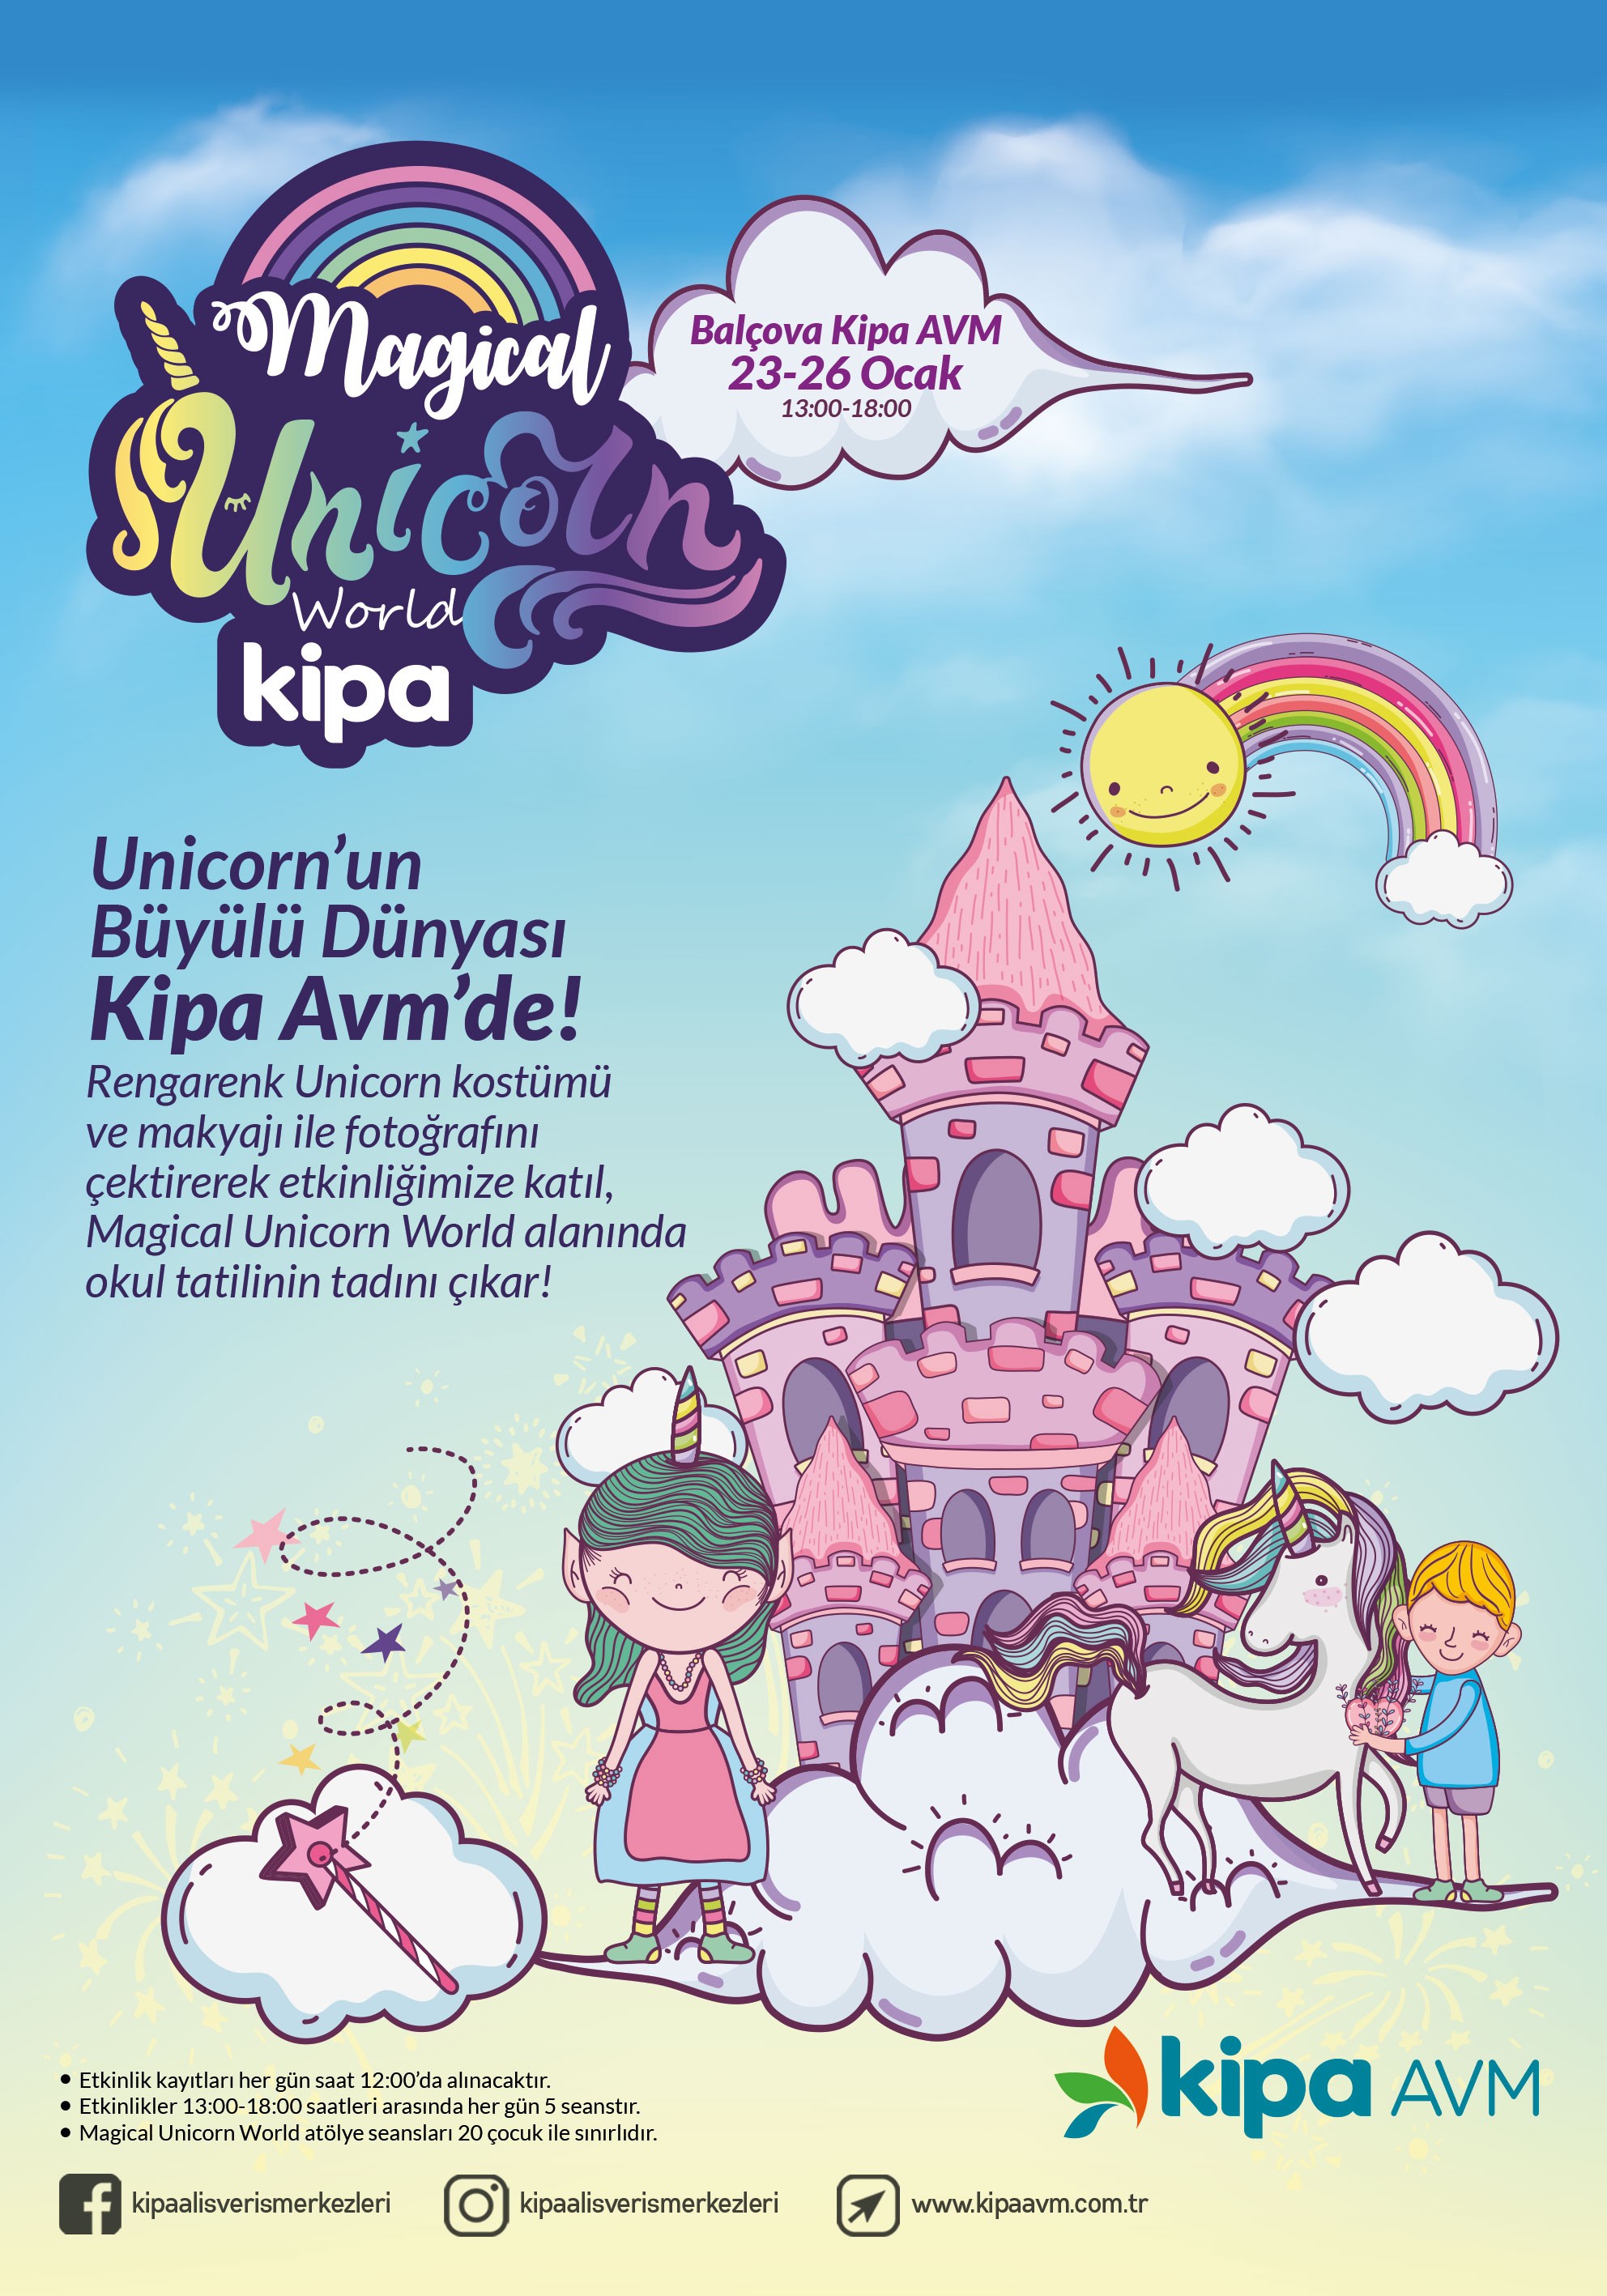 Magical Unicorn World Balçova Kipa AVM'de!